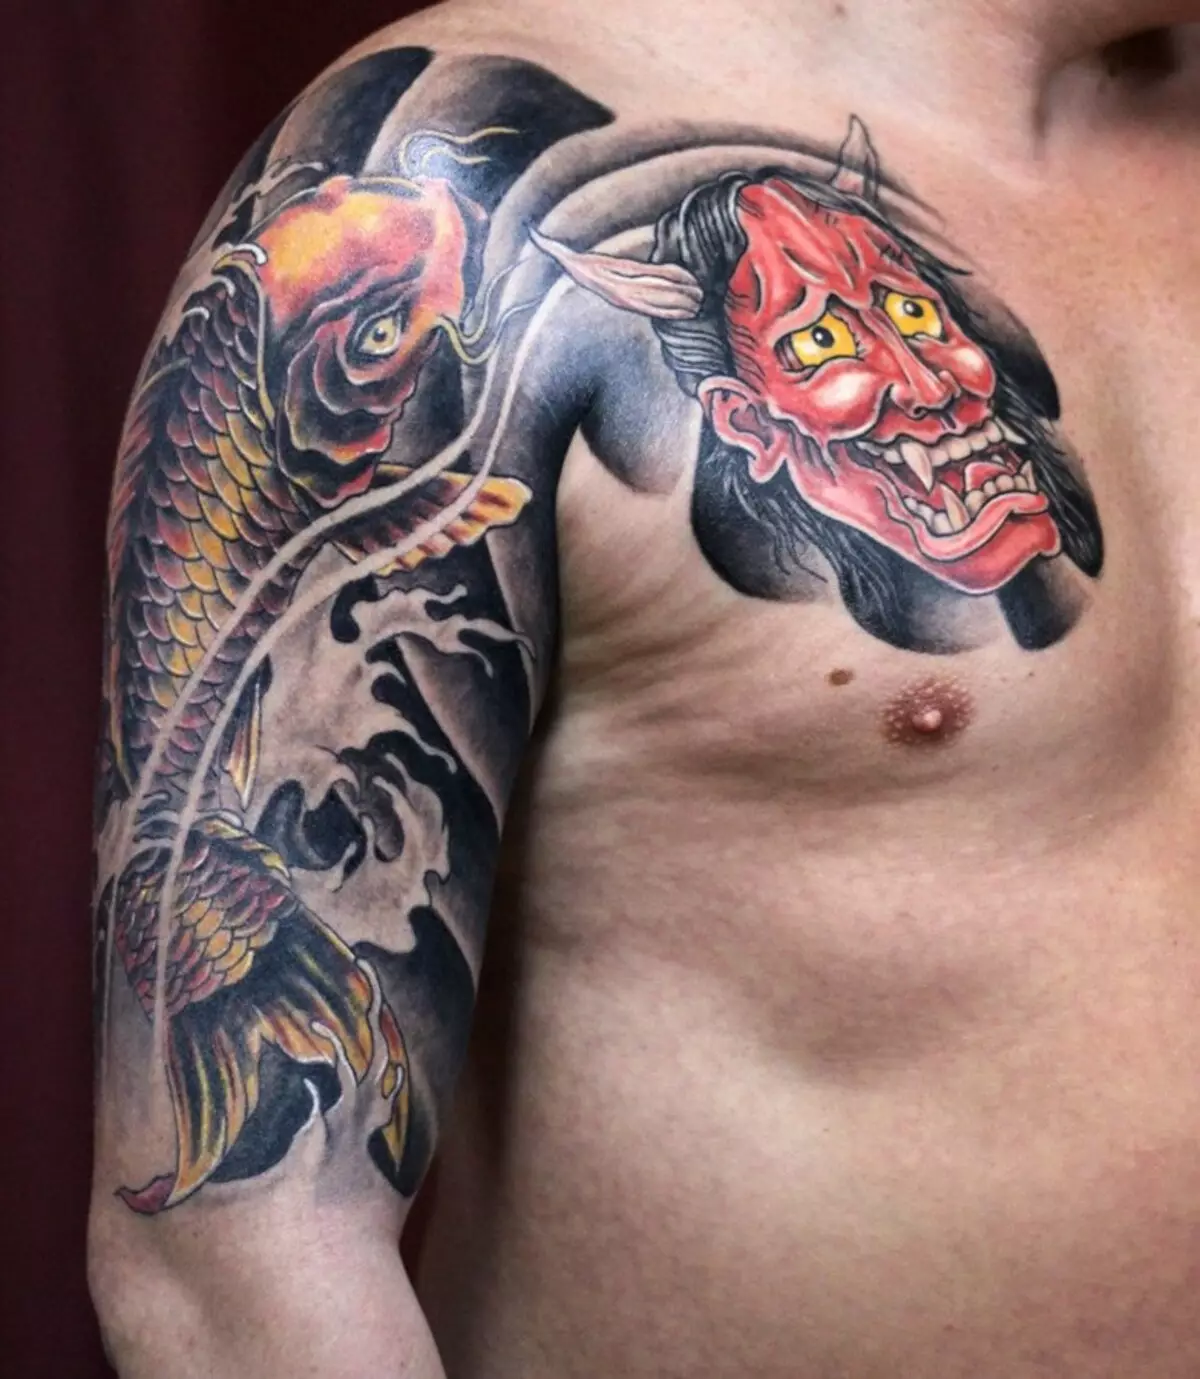 I-tattoo ngohlobo lweemaski zaseJapan: Iidemon kunye neentsingiselo zawo. Imizobo ye-tattoos kwisitayile se-jabhu yaseJapan. I-tattoo 